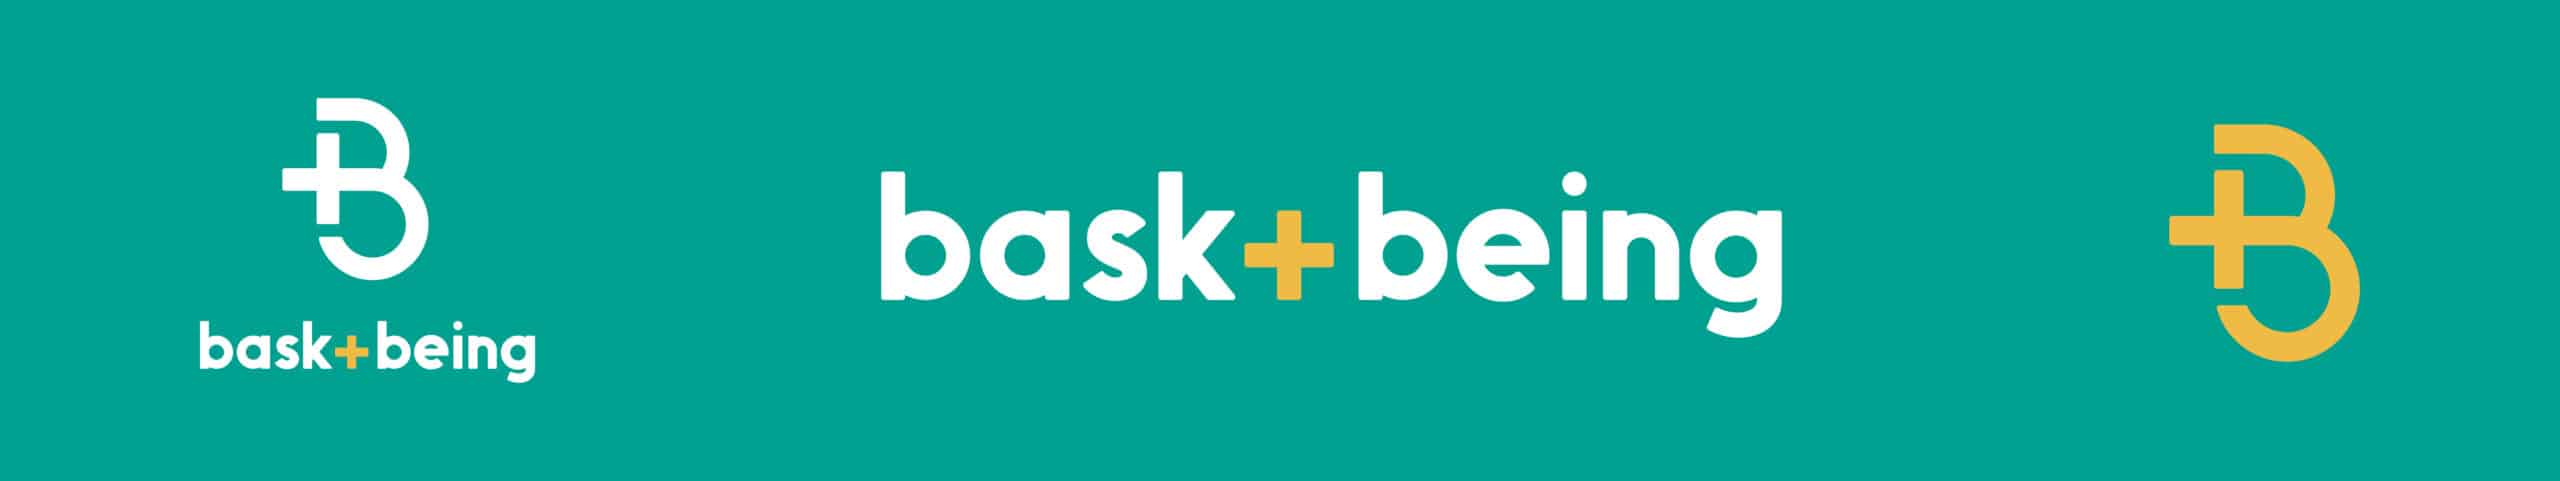 bask+being_Branding_By_Stellen_Design_Logo Design_03